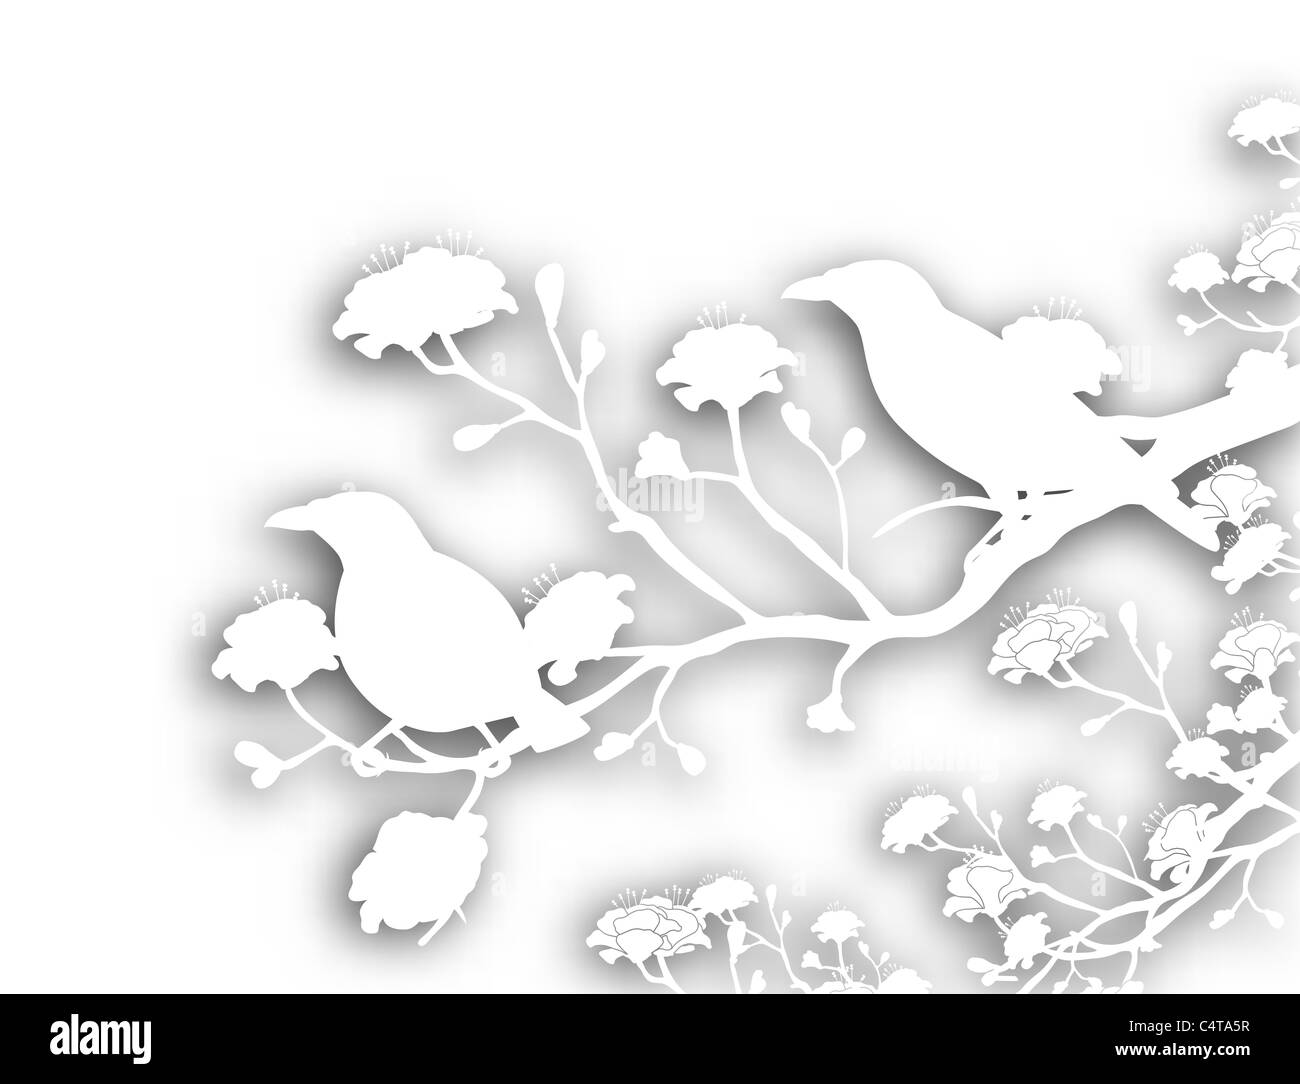 Illustrazione di esclusione di una coppia di myna selvatici Volatili con ombreggiatura di sfondo Foto Stock